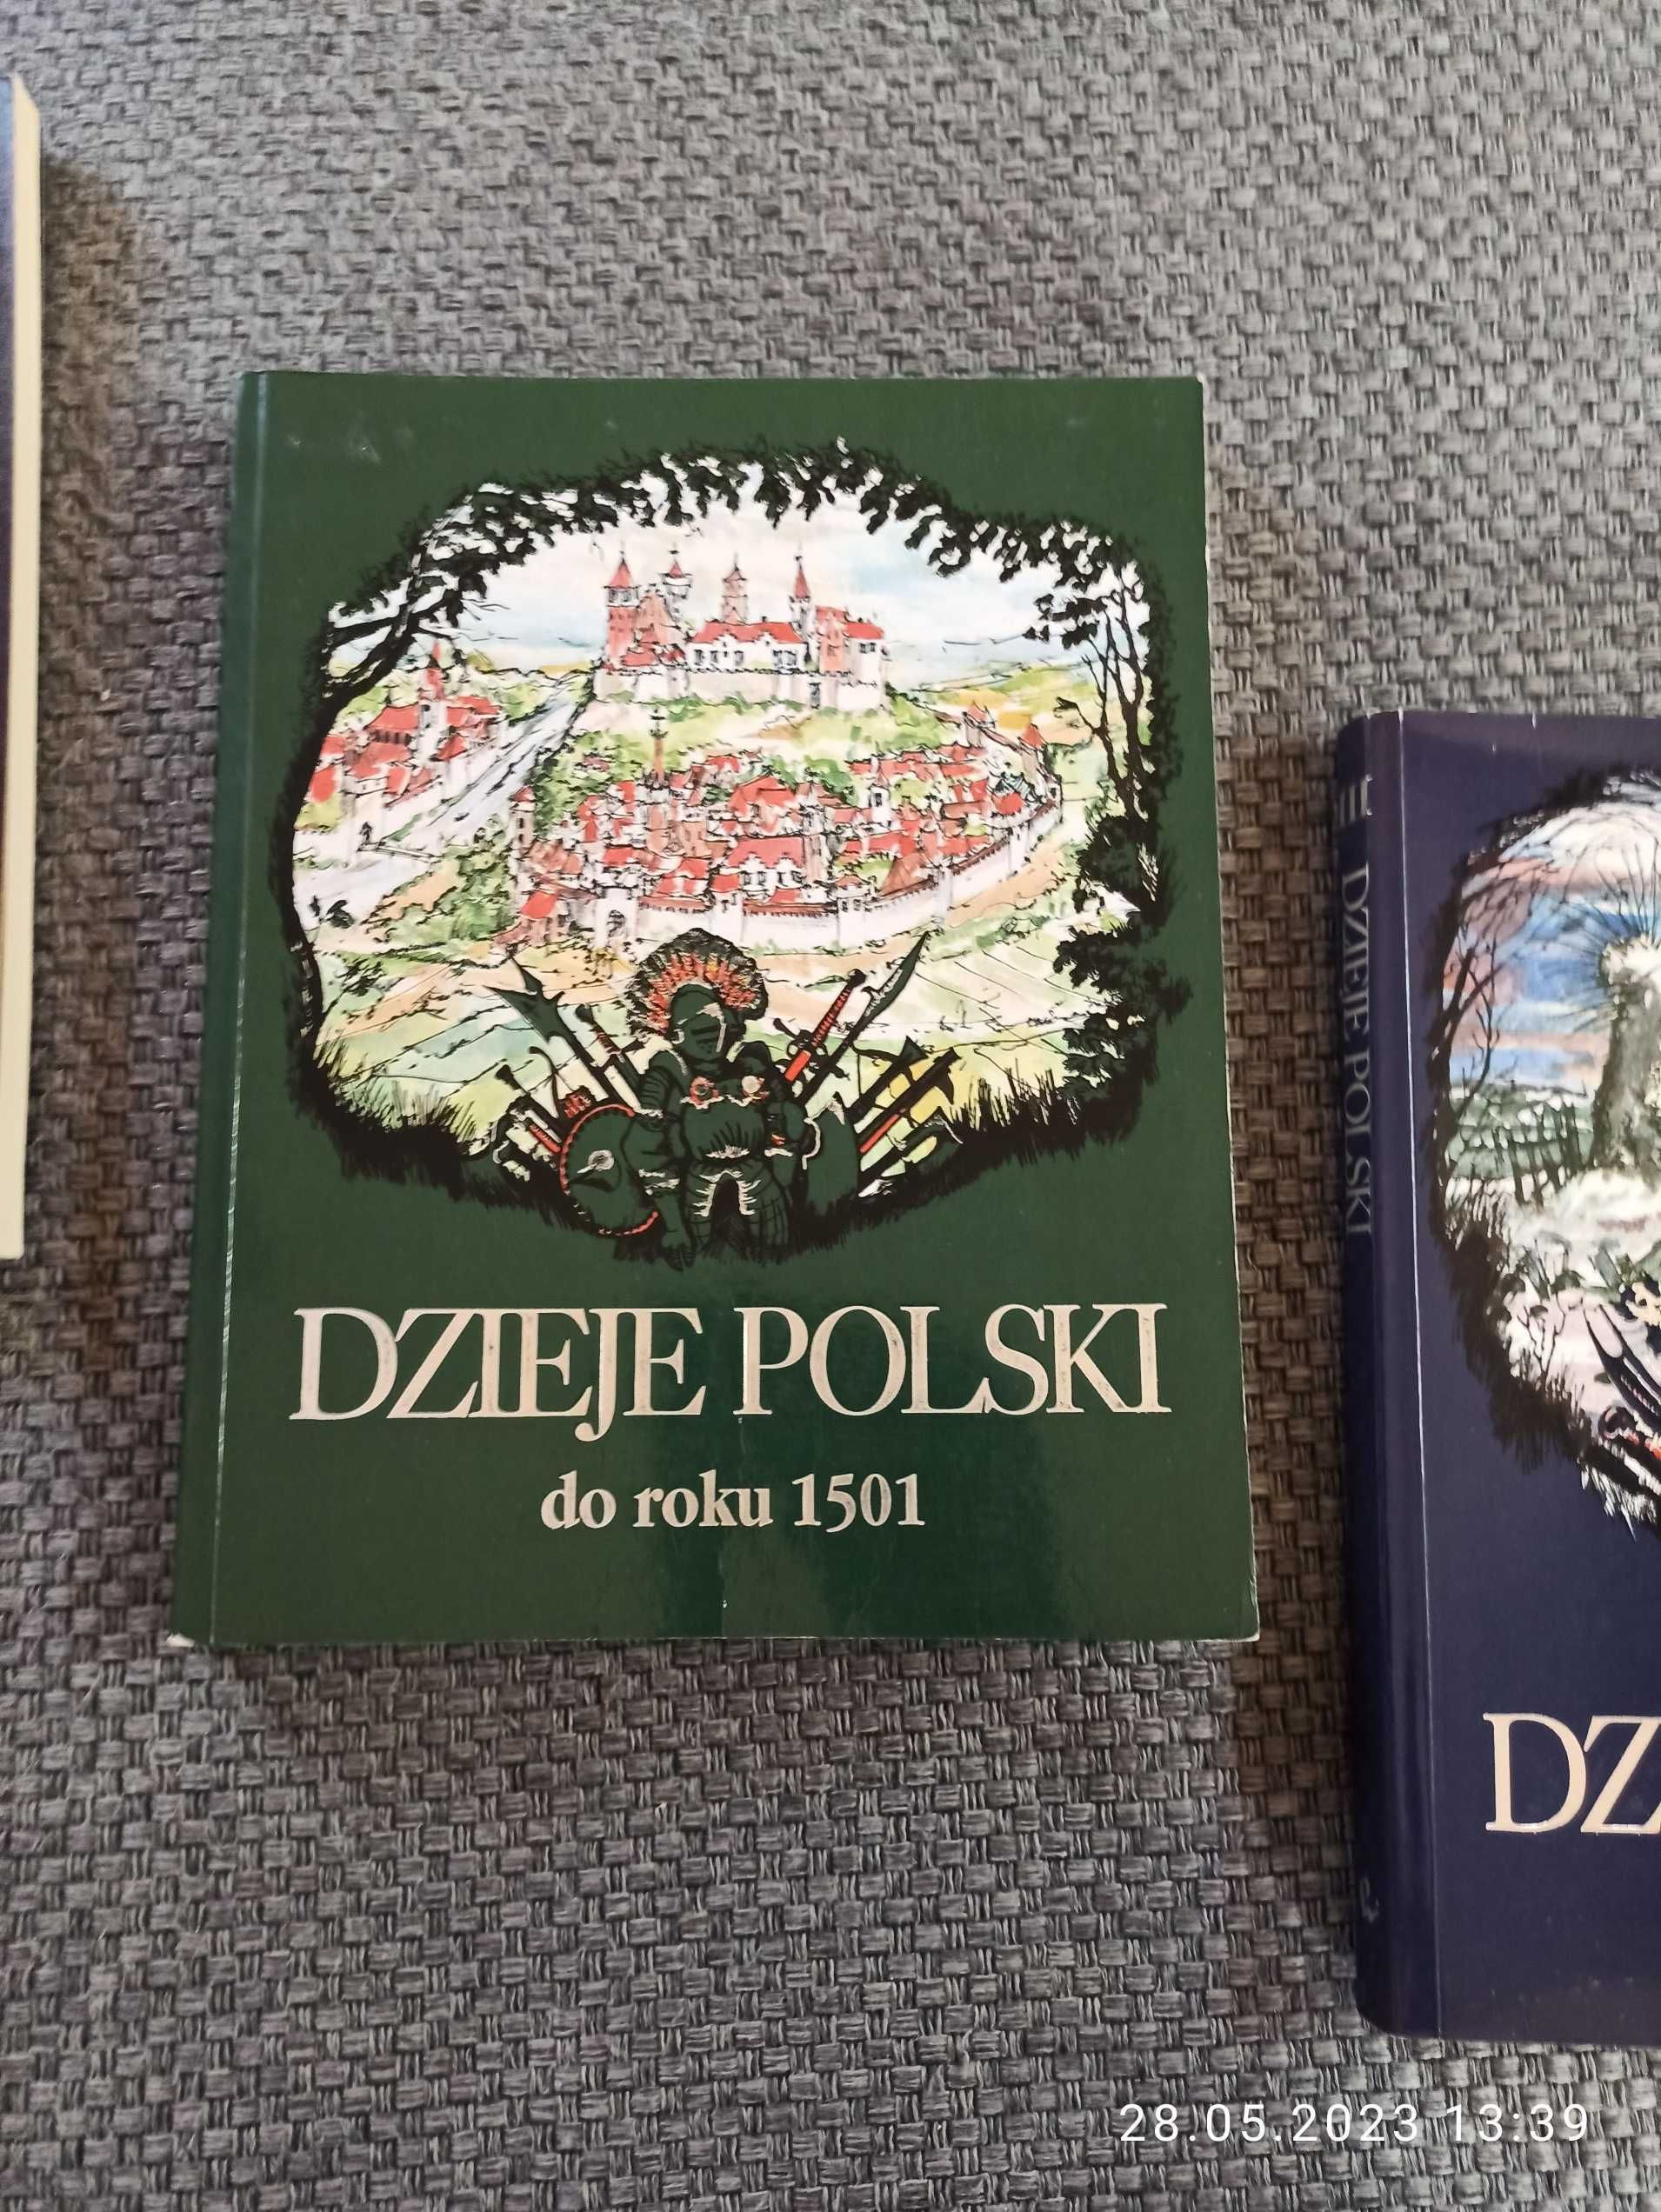 Dzieje Polski seria trzech książek historycznych